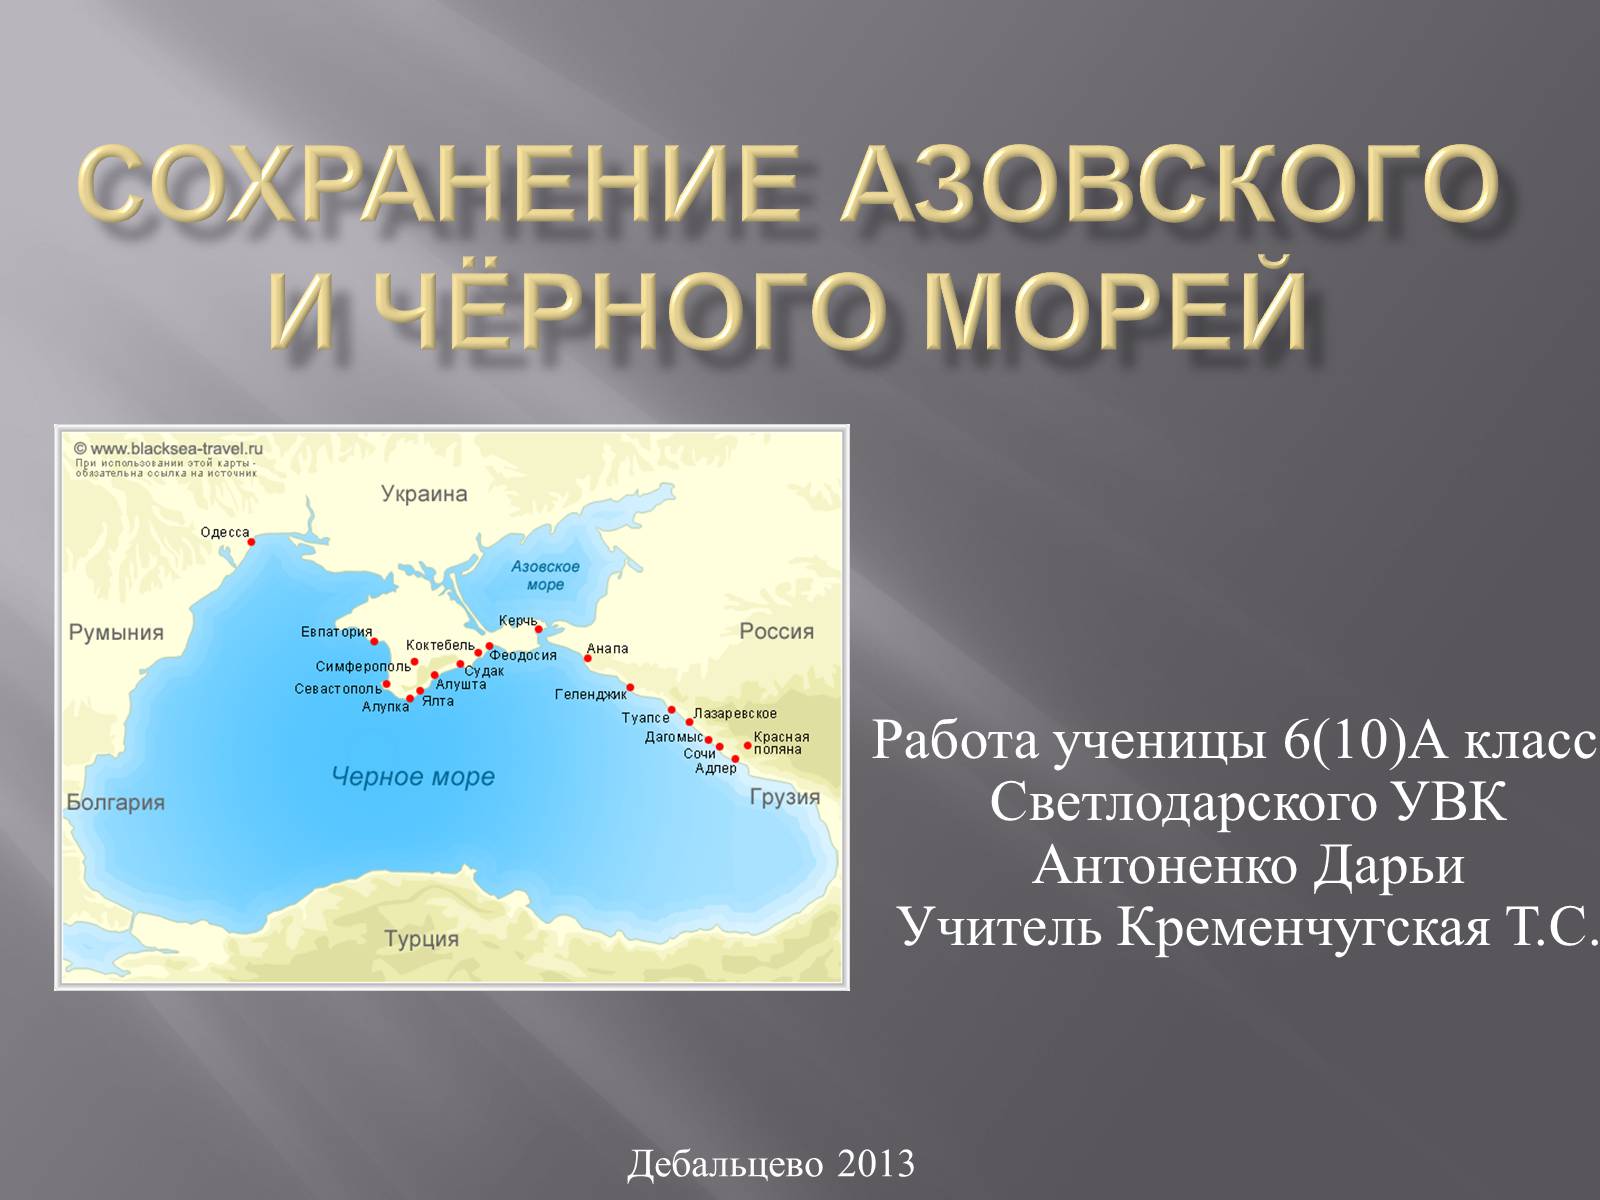 черное и азовское море встречаются